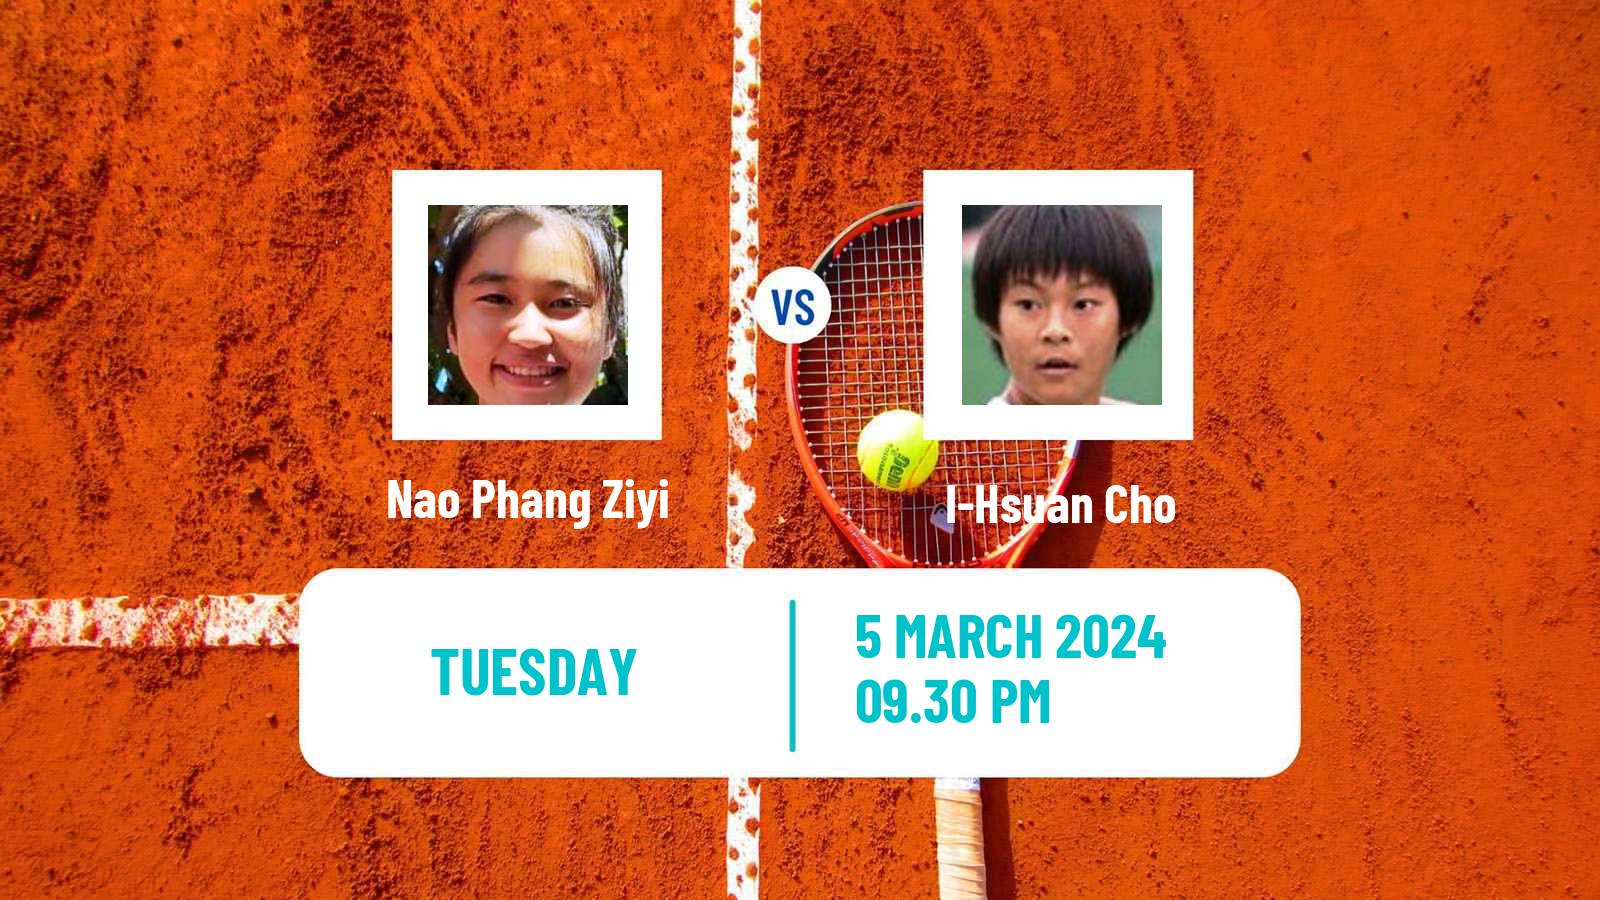 Tennis ITF W15 Kuala Lumpur Women Nao Phang Ziyi - I-Hsuan Cho